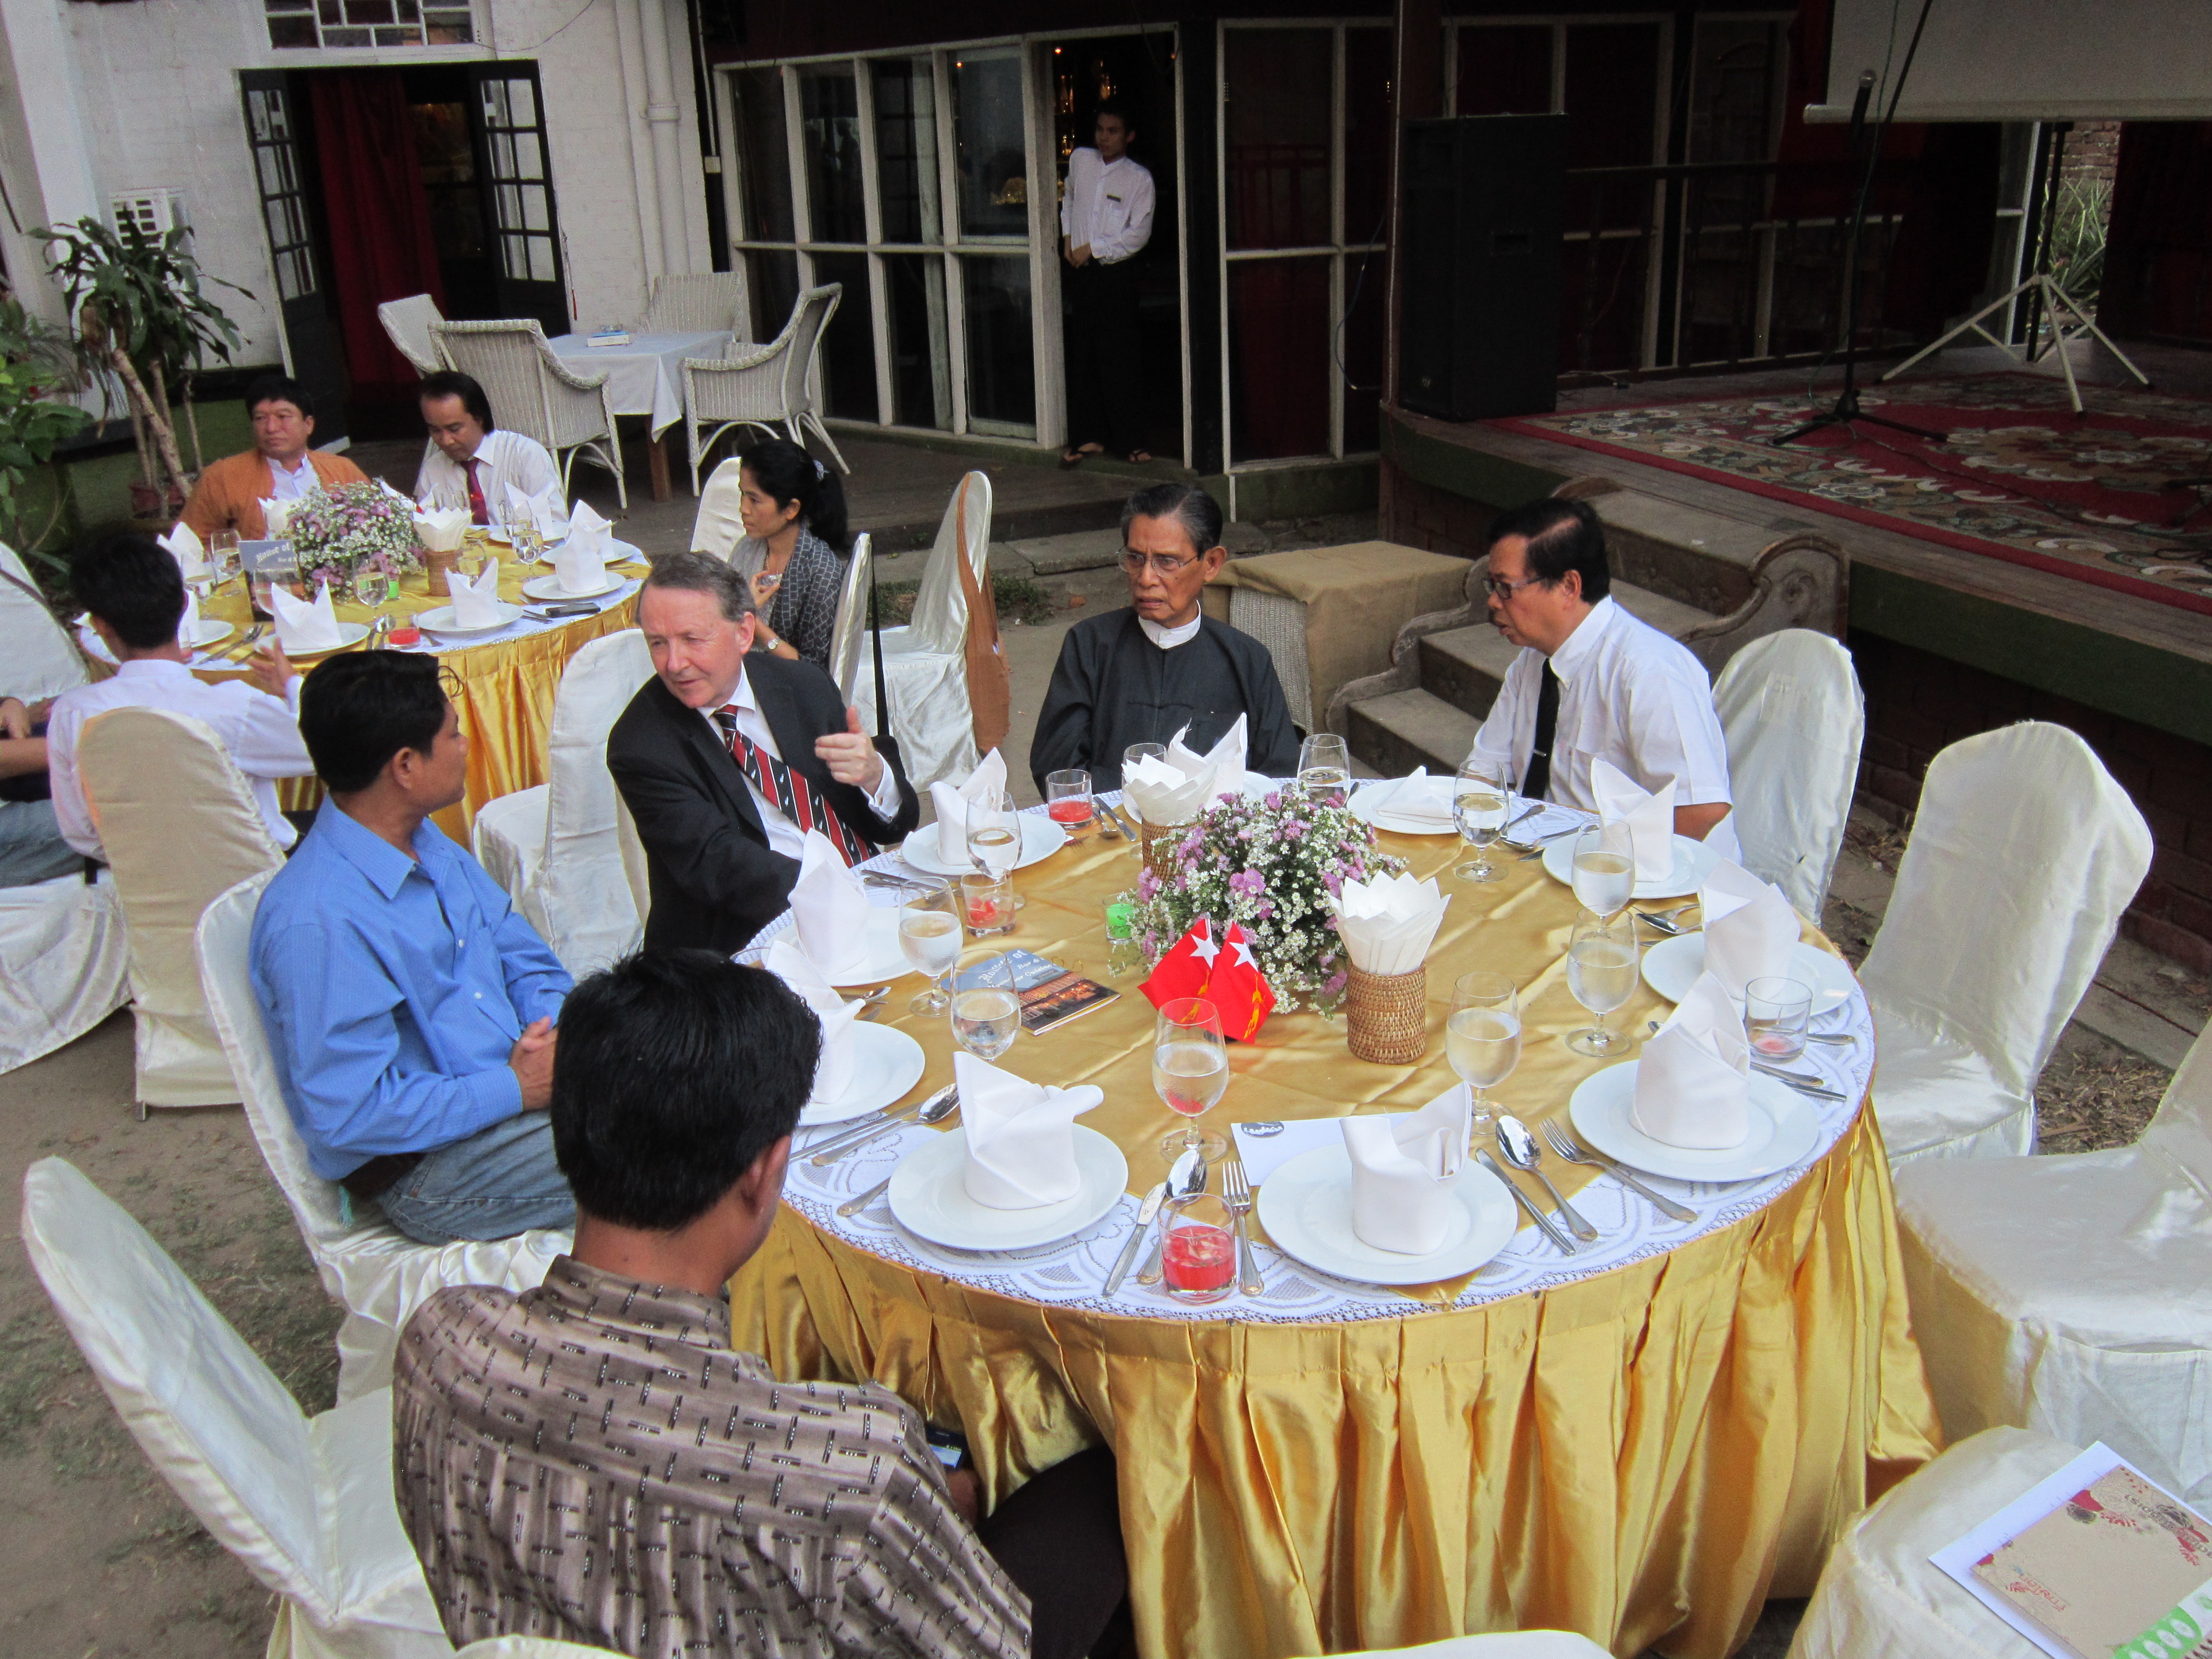 NLD Meeting at Rangoon's House of Memories